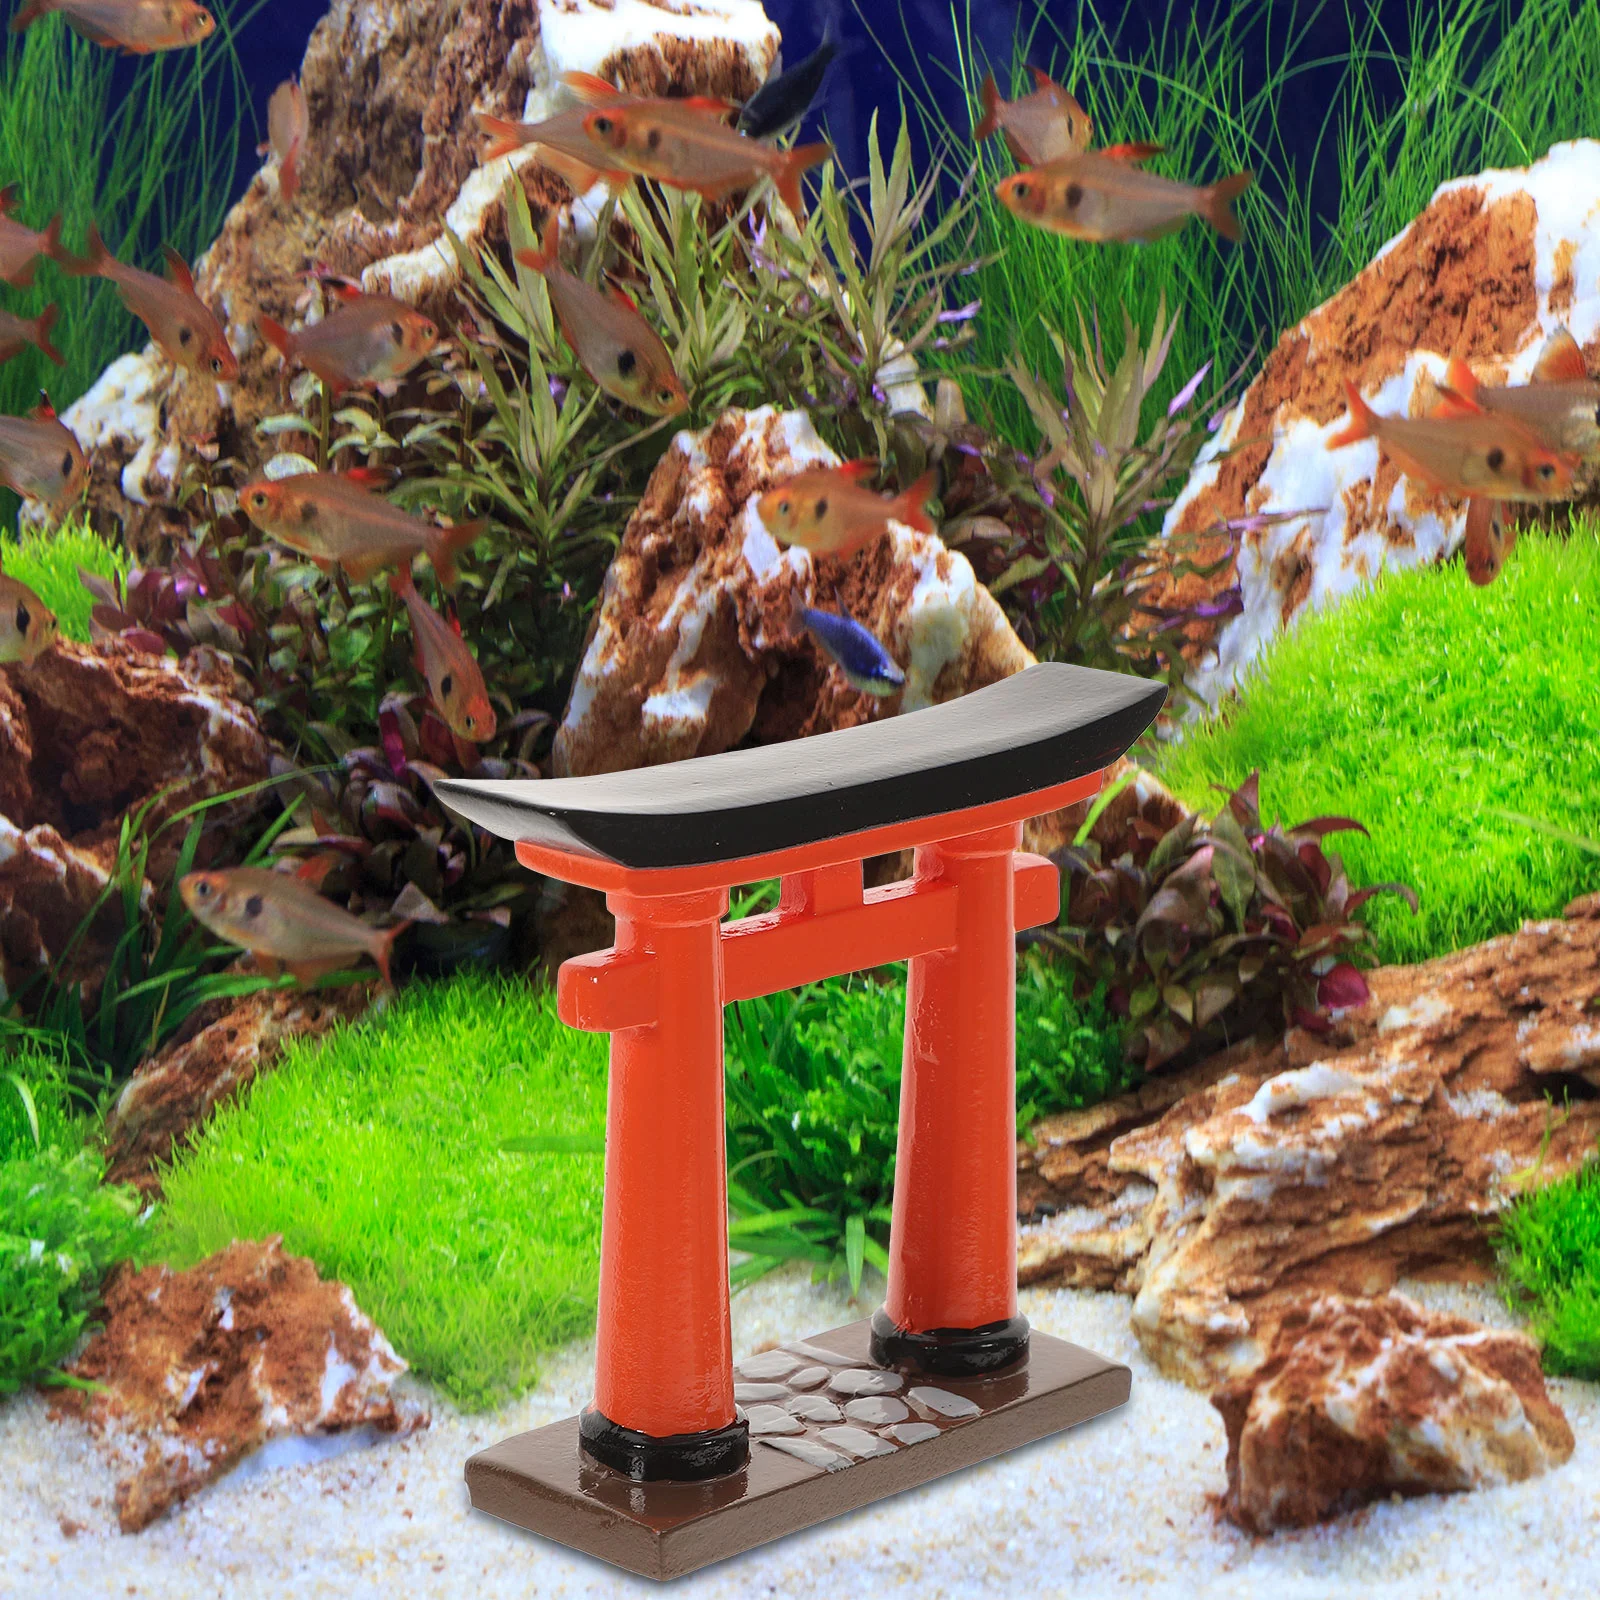 Minyatür Torii su tankı Akvaryum Süs Bonsai Torii Dekorasyon Japon Tarzı Modeli Görüntü 0